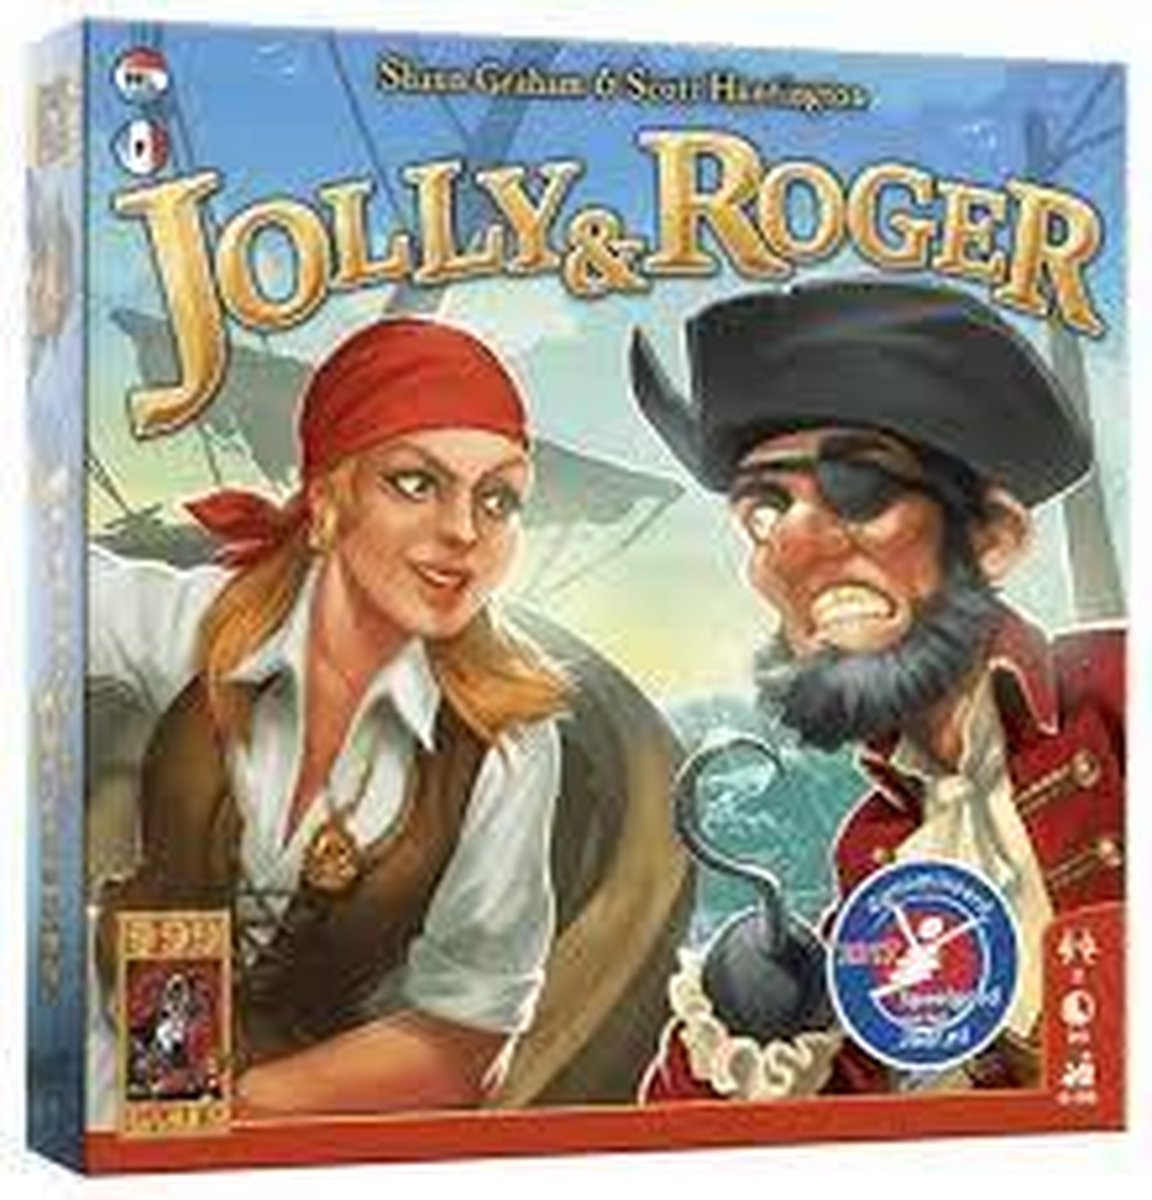 999 games Jolly & Roger Kaartspel